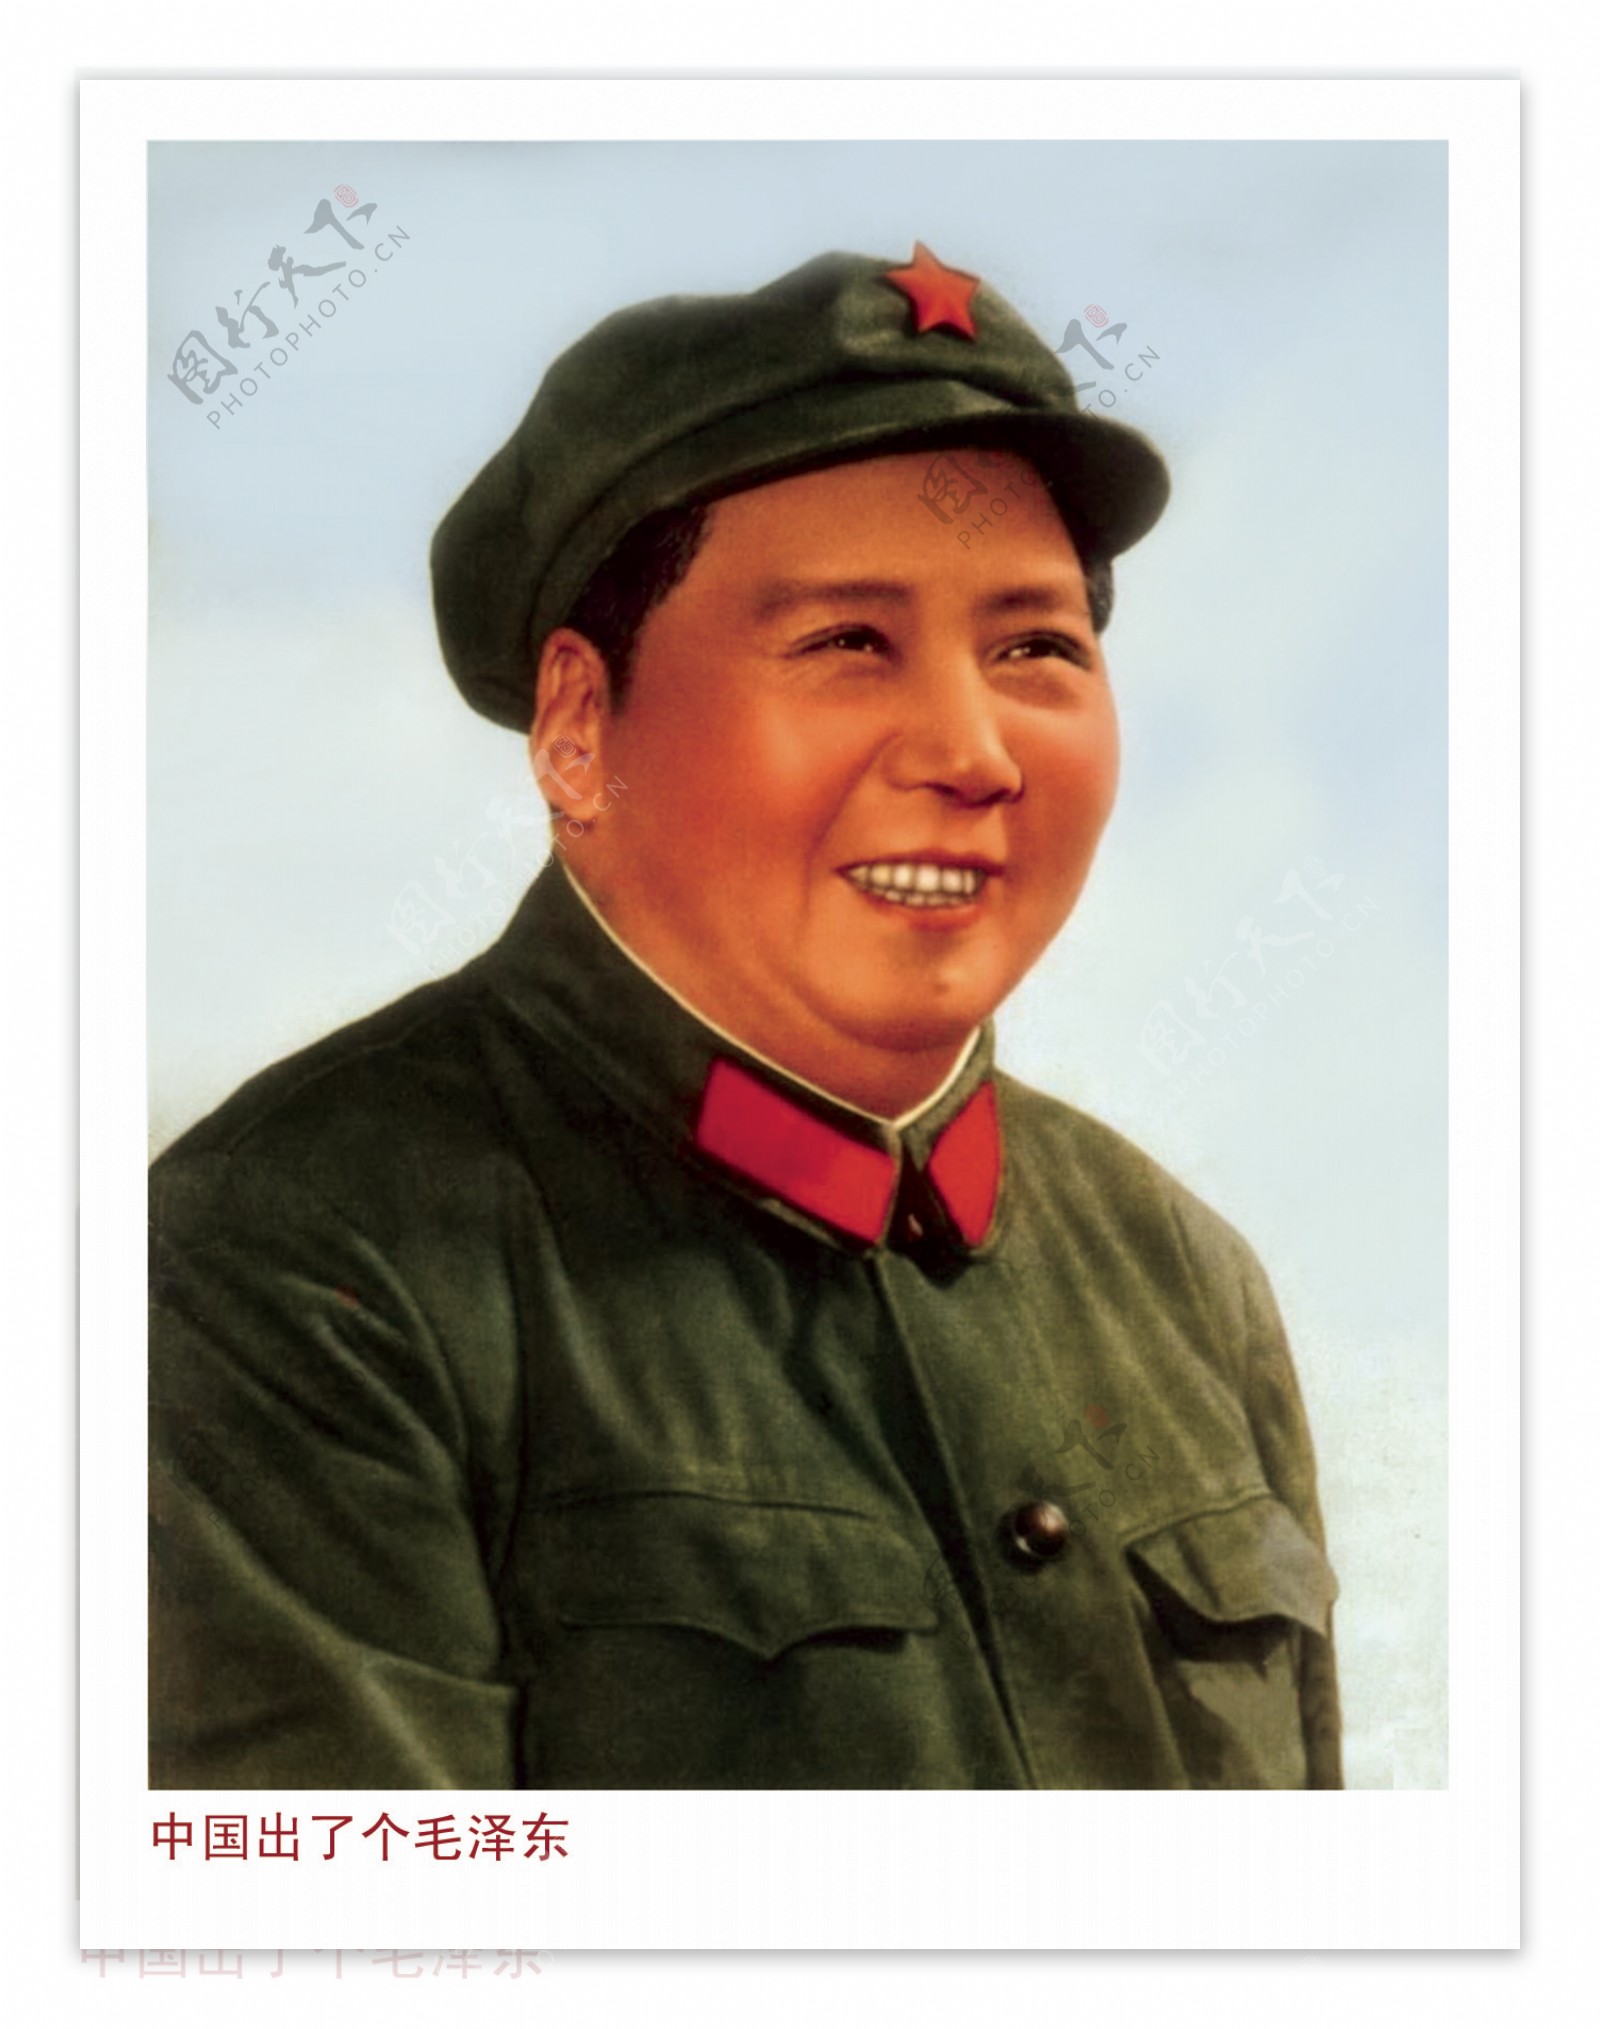 中国出了个毛泽东图片